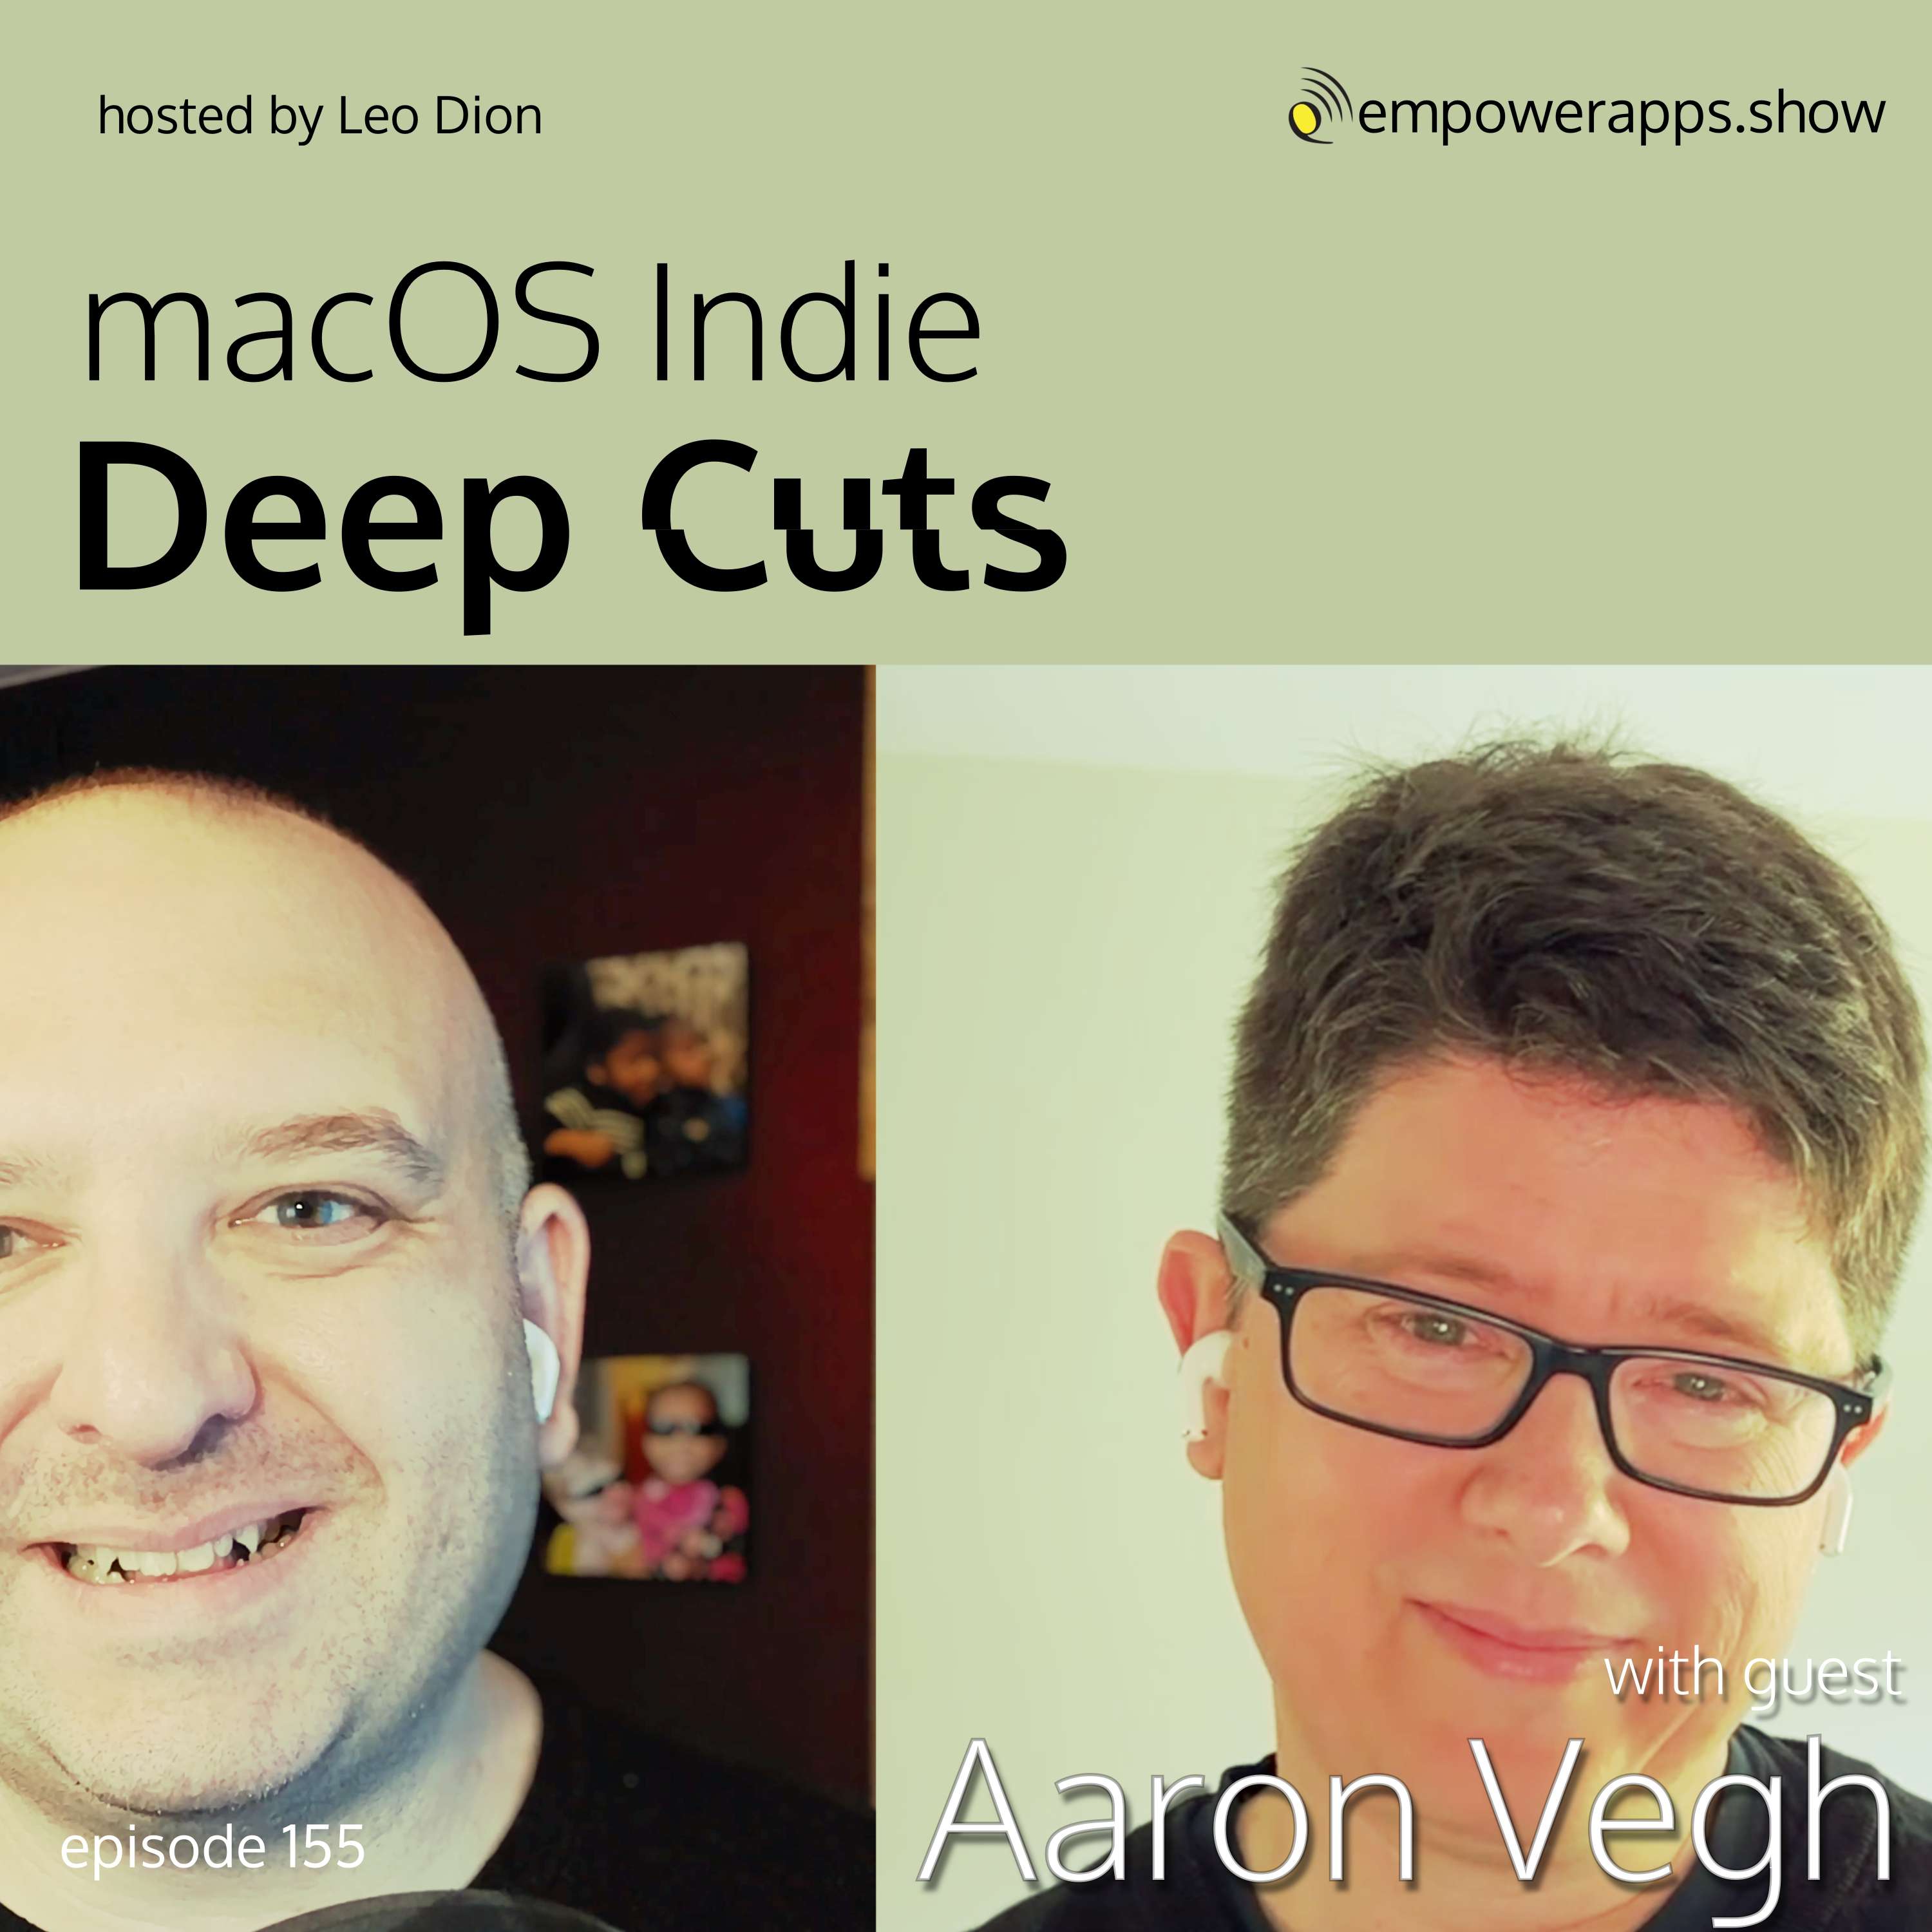 macOS Indie Deep Cuts with Aaron Vegh